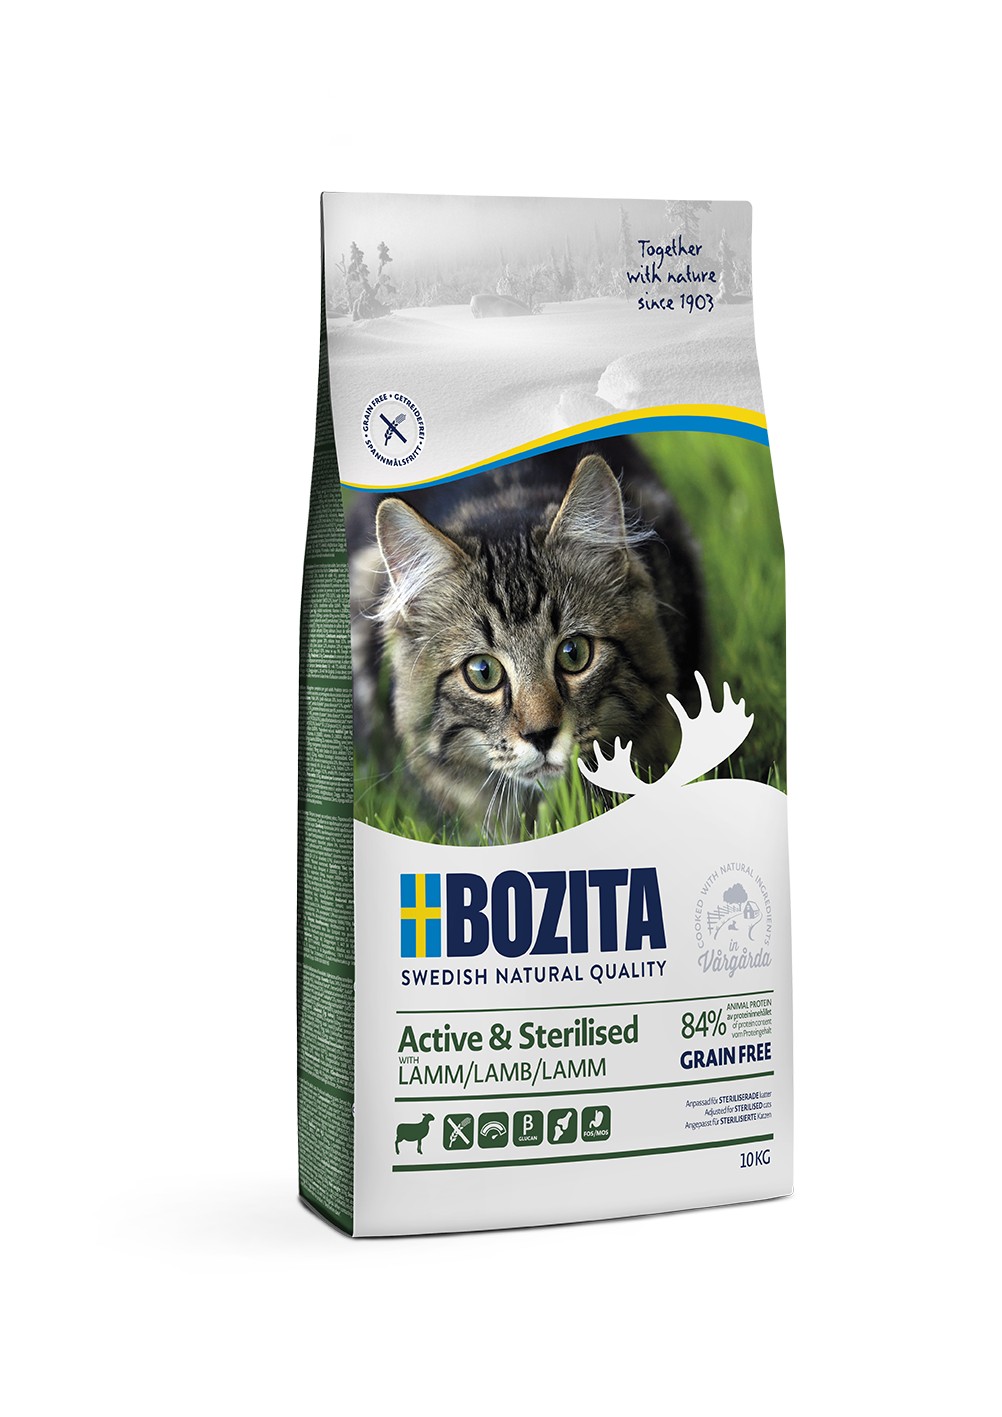 Bozita Active & Sterilized GF Lamb сухой беззерновой корм с ягненком для активных стерилизованных кошек, 10кг